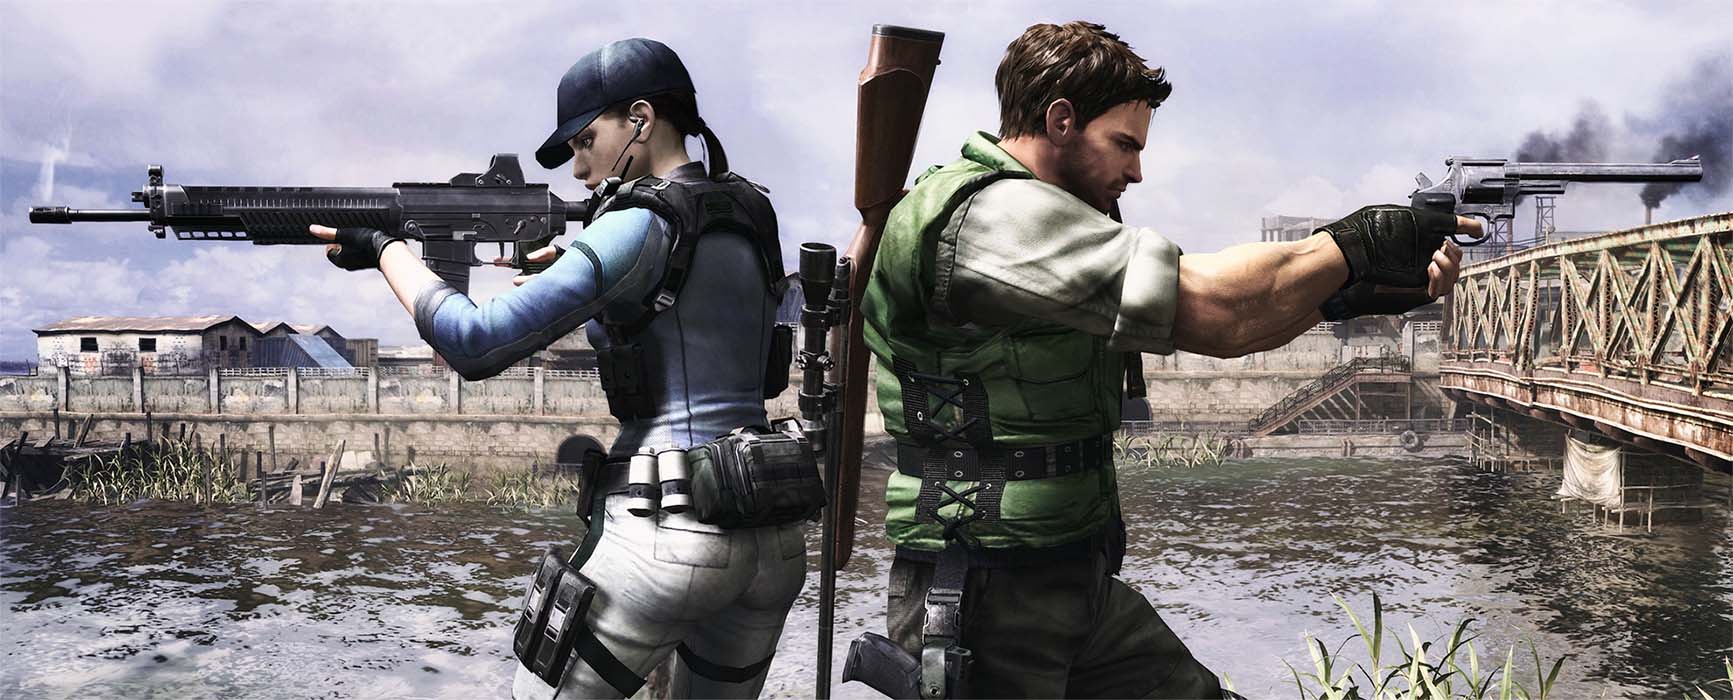 Resident Evil 5 – обновление ввело в игру локальный кооператив